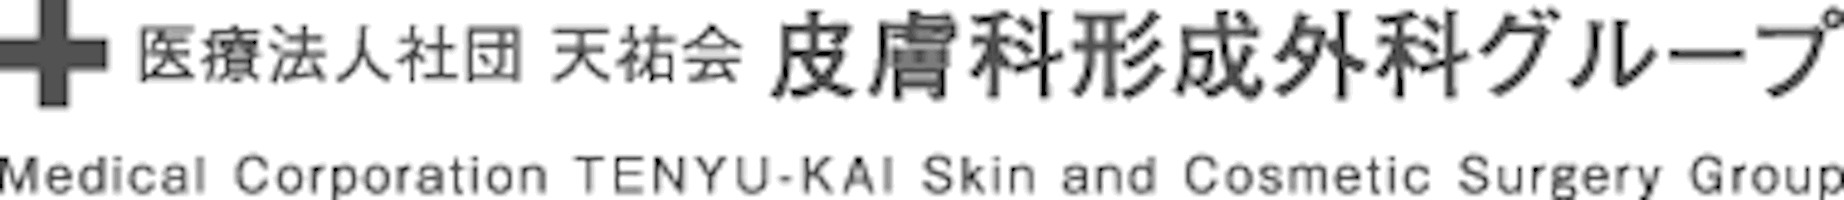 円山公園皮膚科形成外科ロゴ